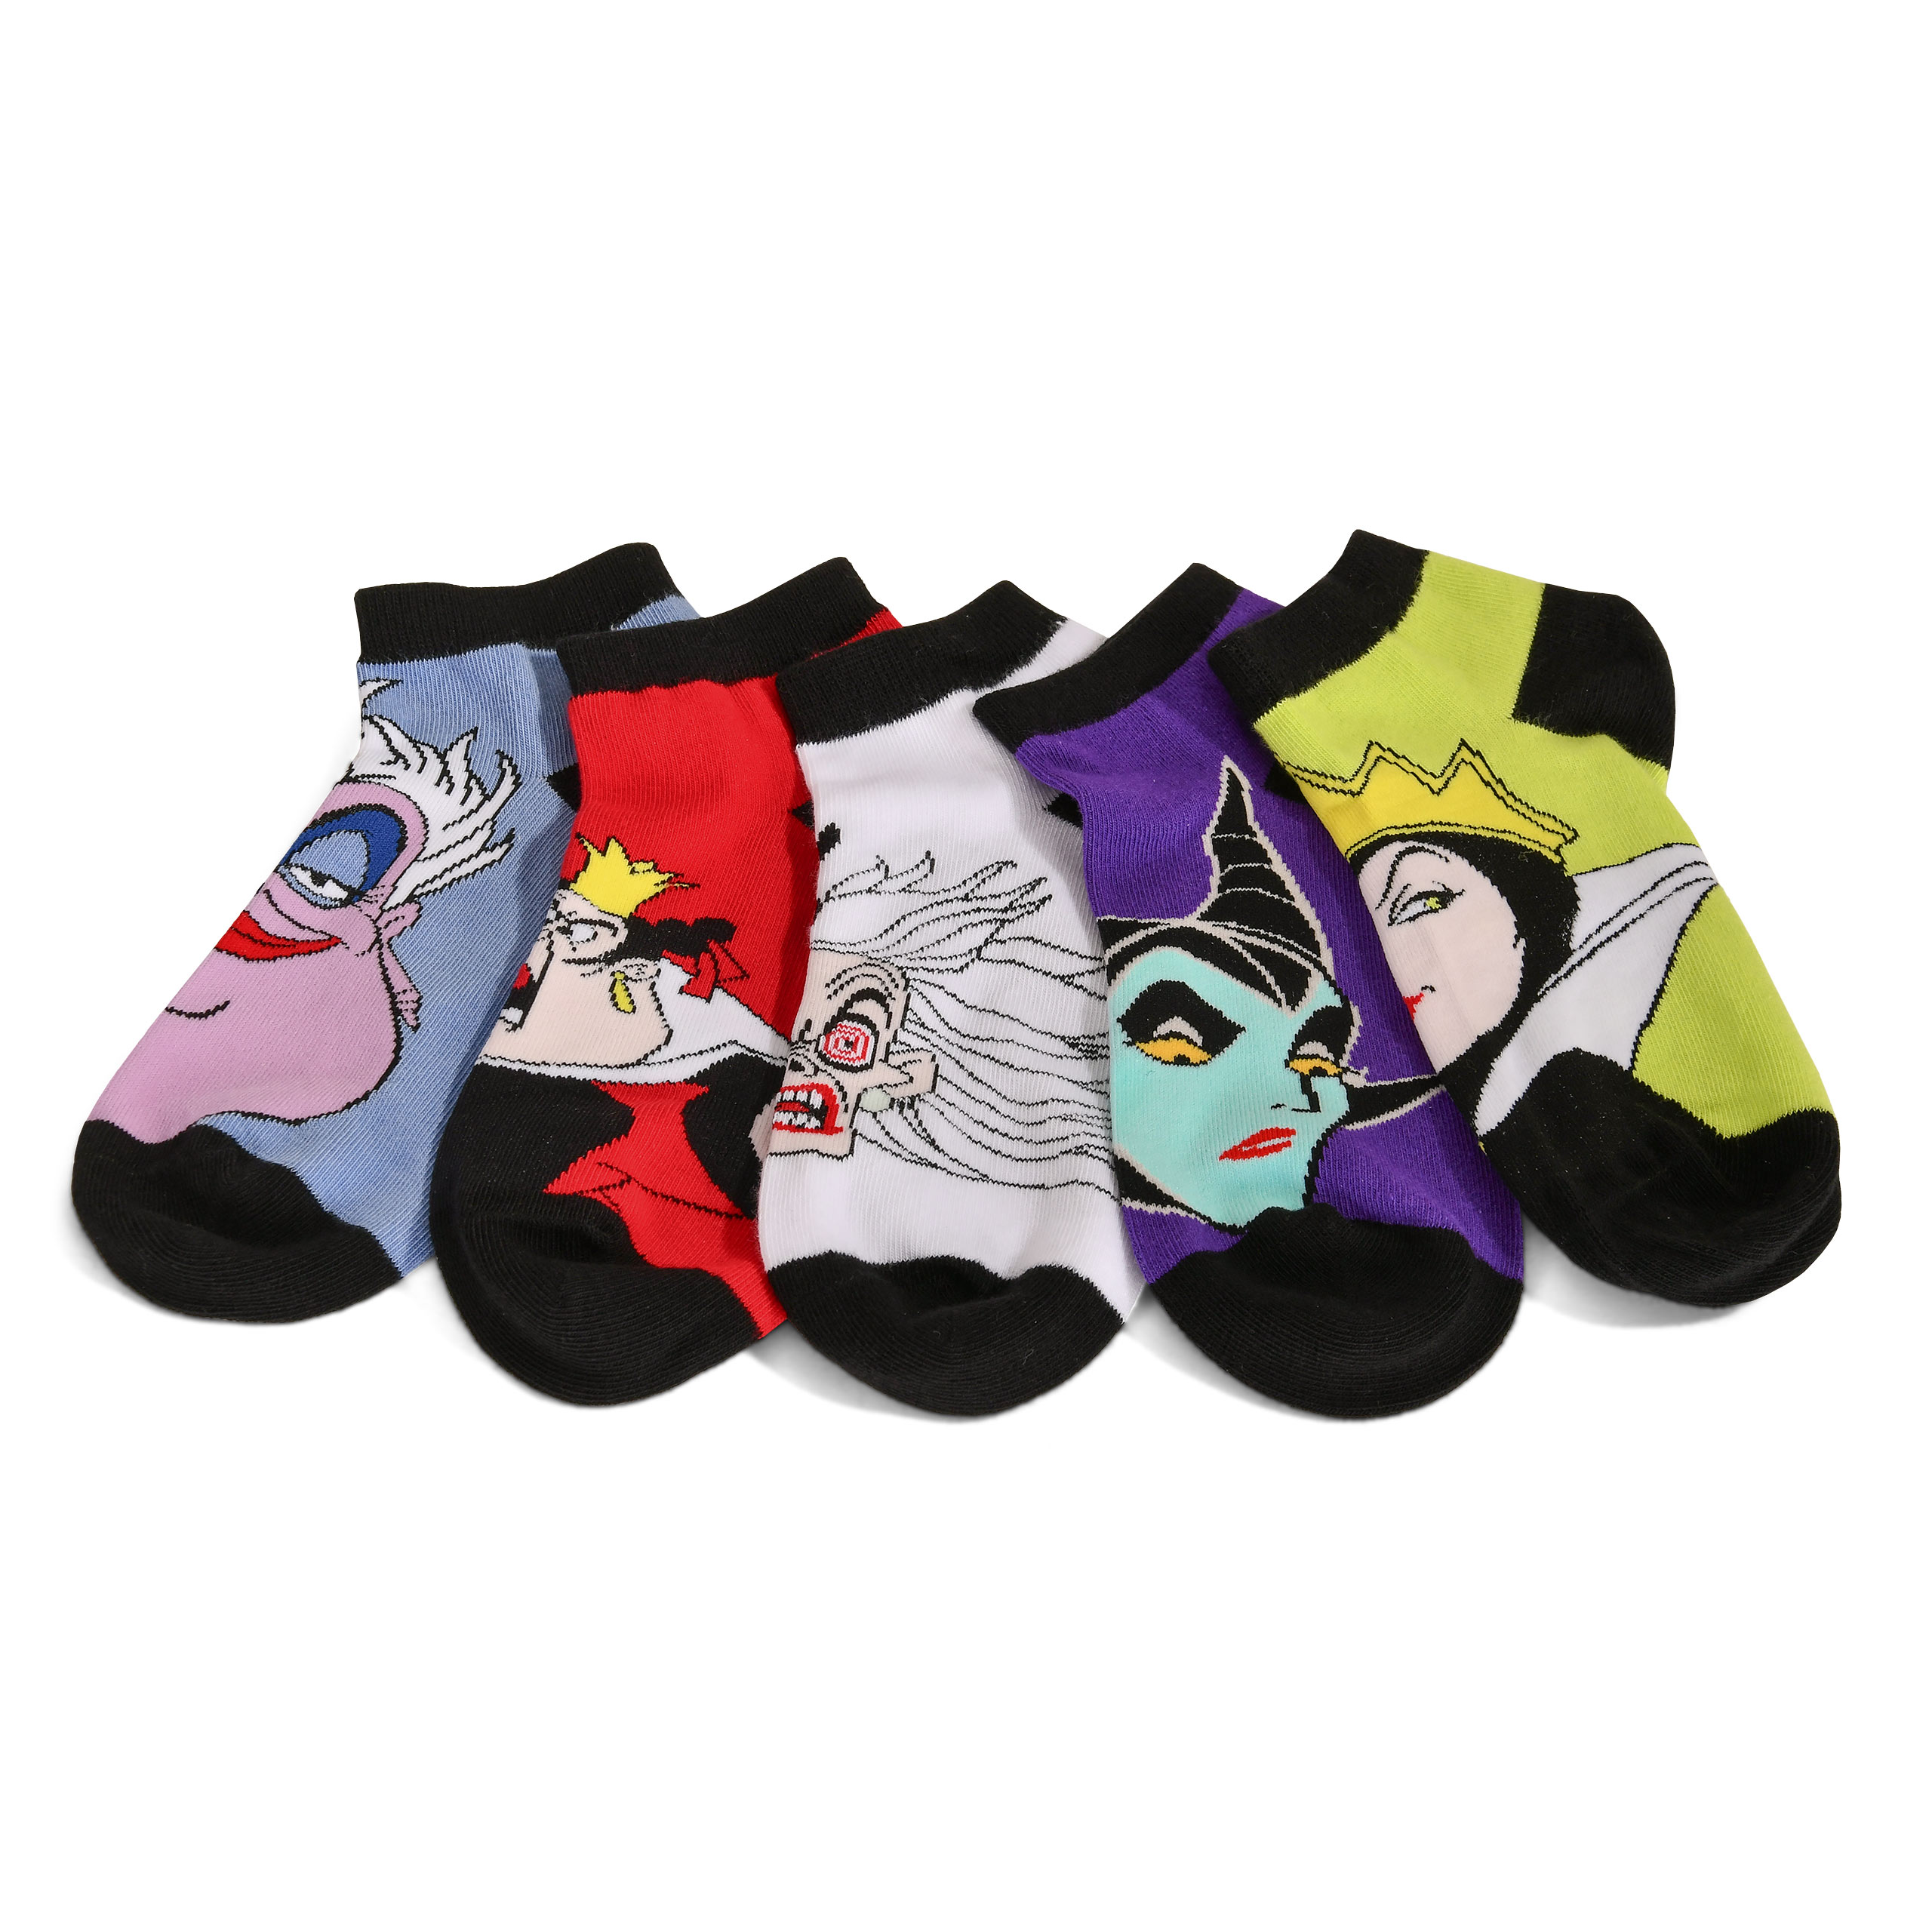 Disney - Villains Bad Girls Sneaker Socken 5er Set